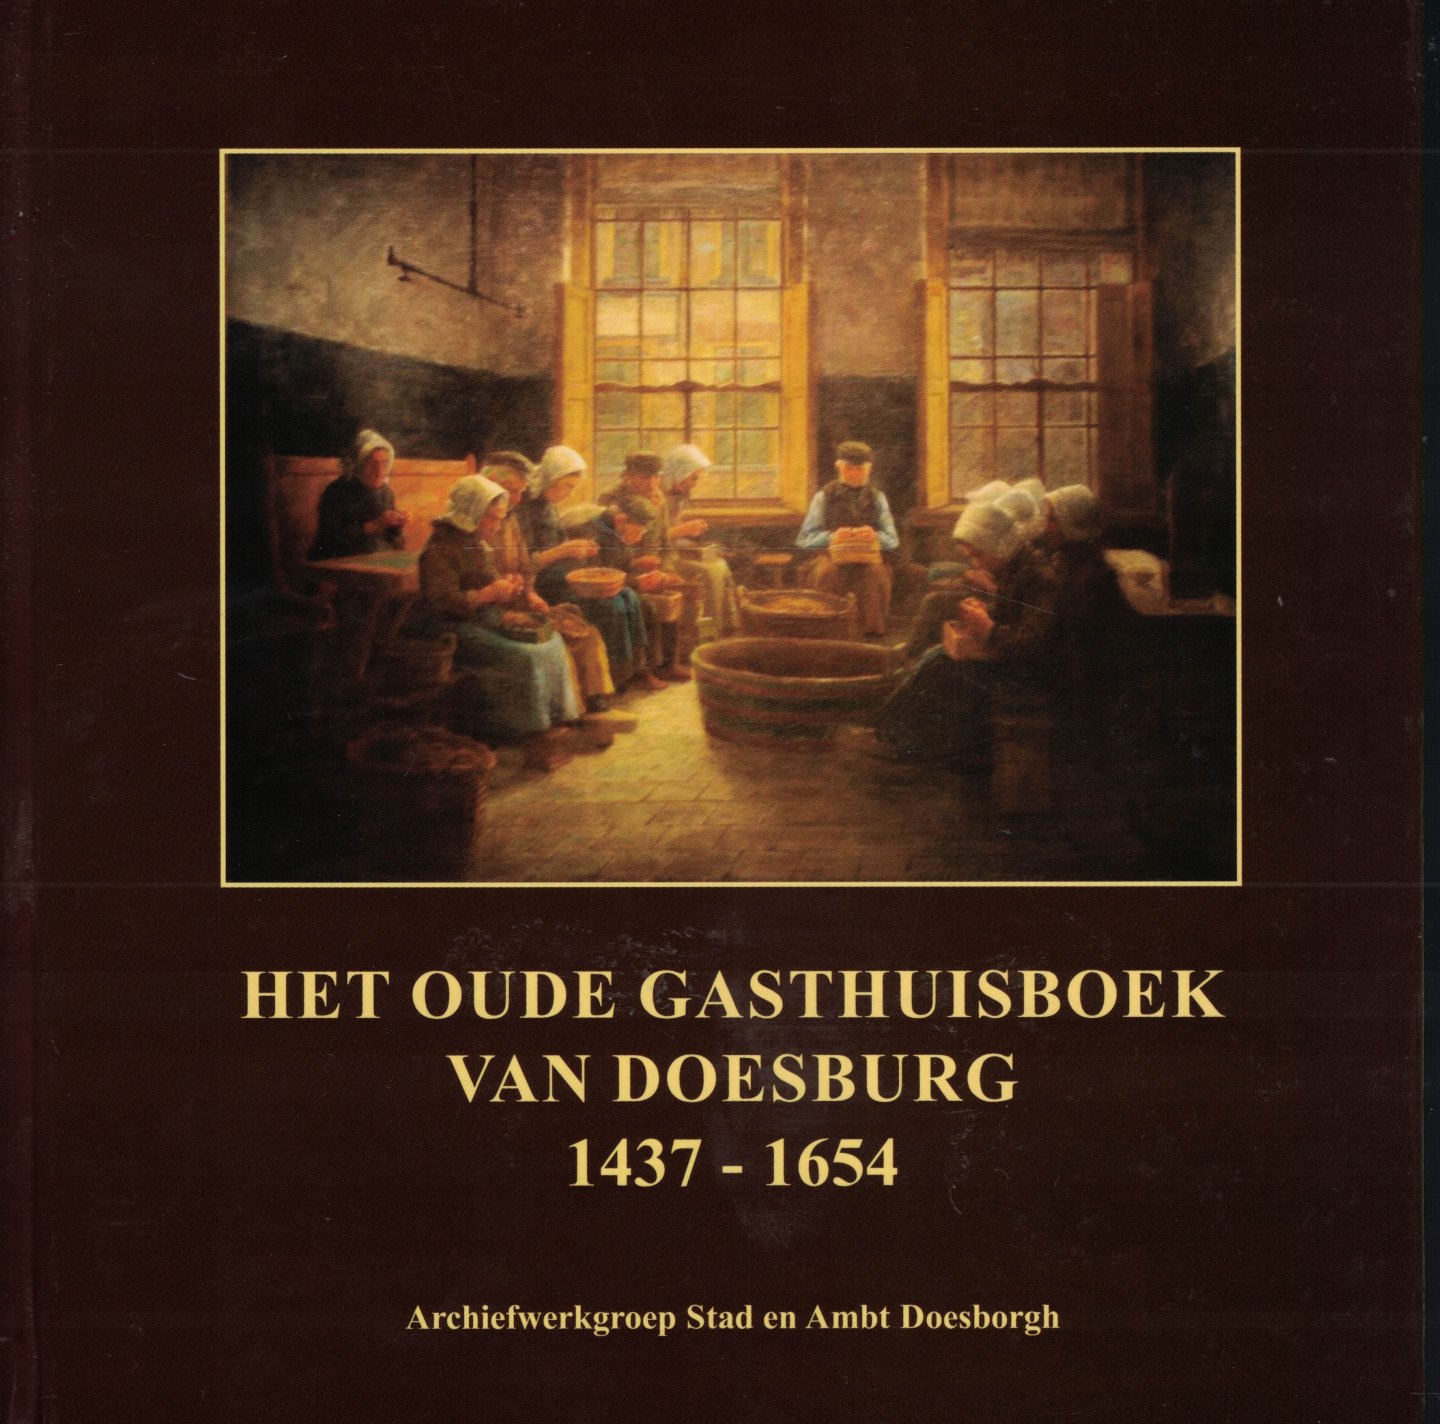 Pos, Ton & Liesbeth Rensing & Carl König - Het oude Gasthuisboek van Doesburg 1437-1654